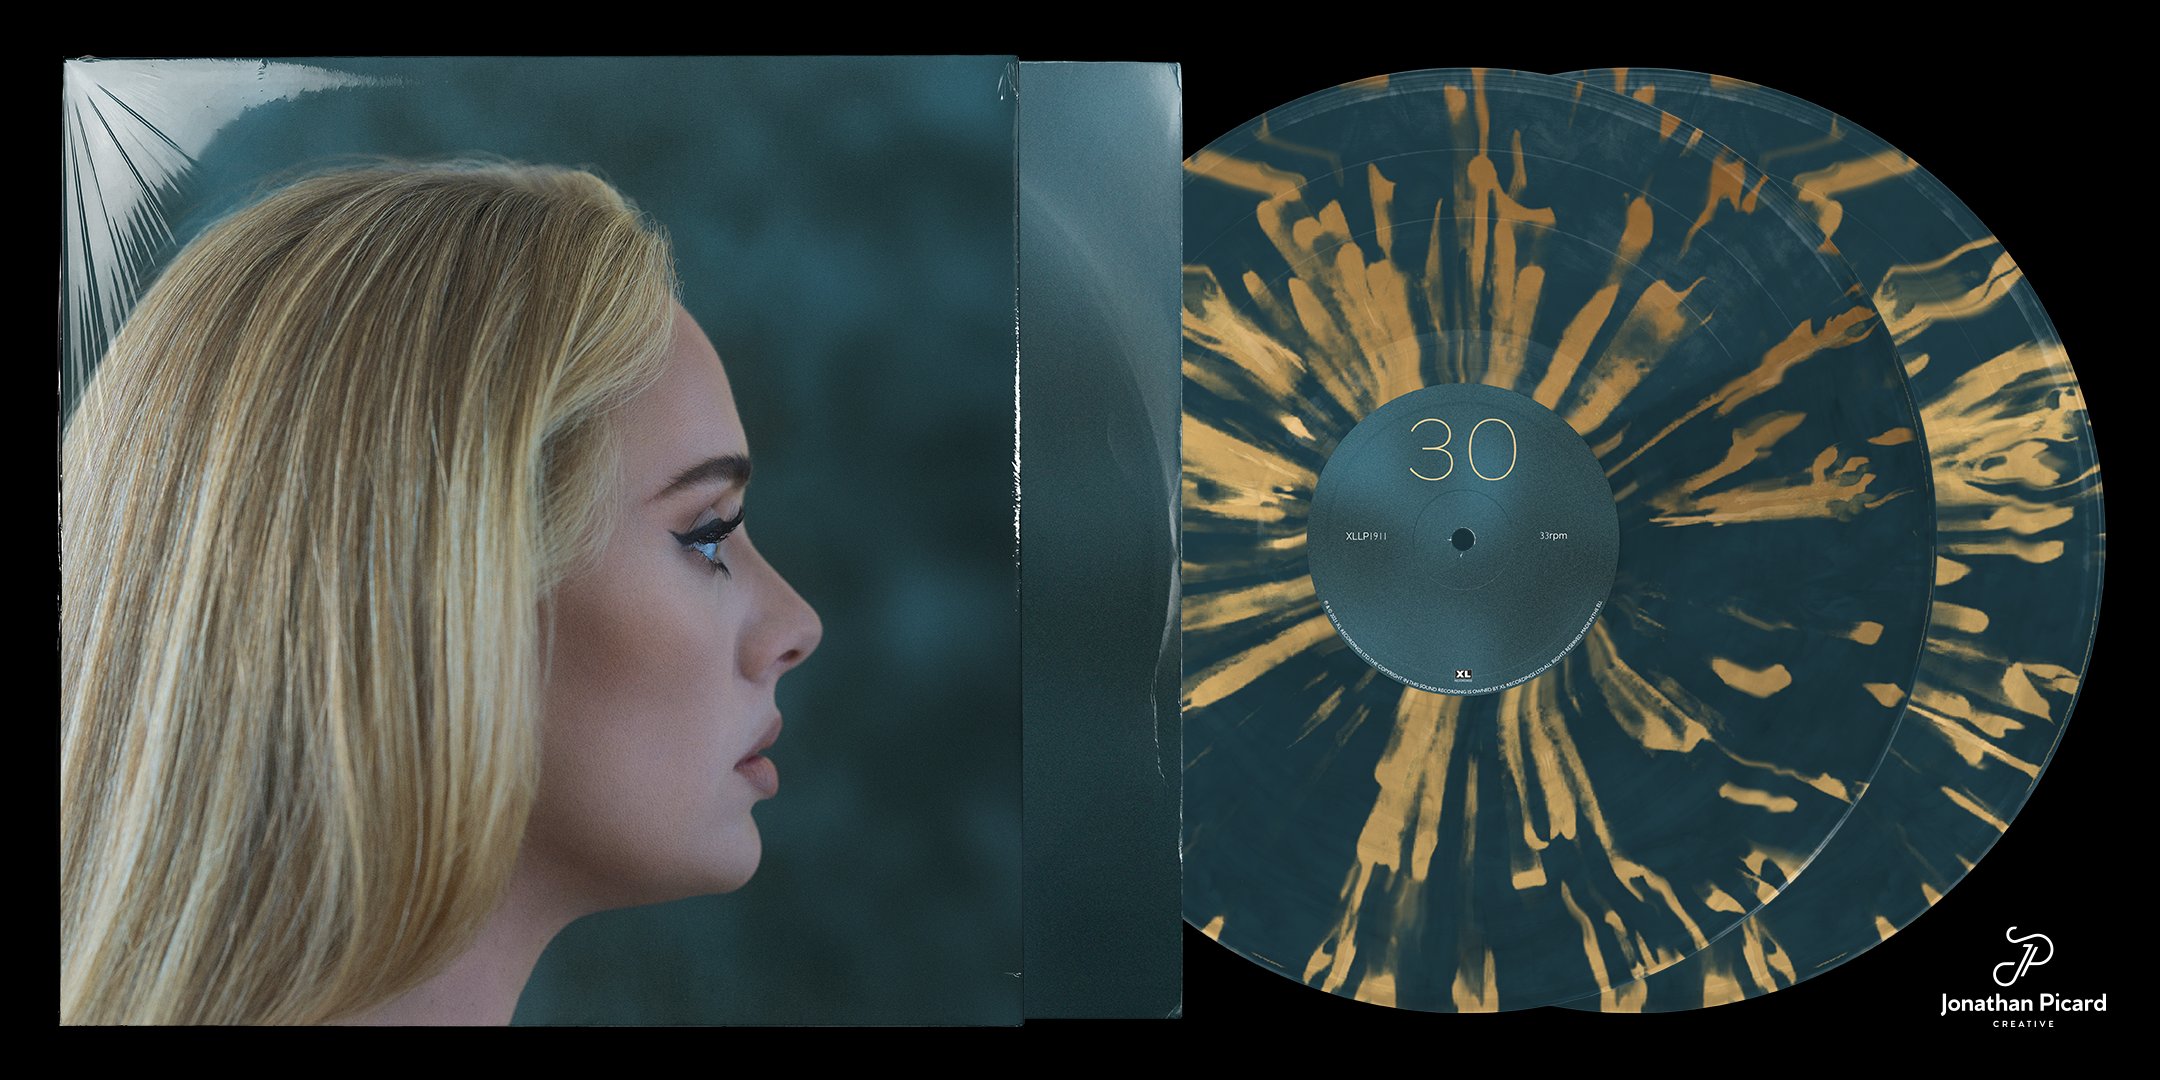 The Infamous Jonathan on X: Adele, 30 vinyl album concept